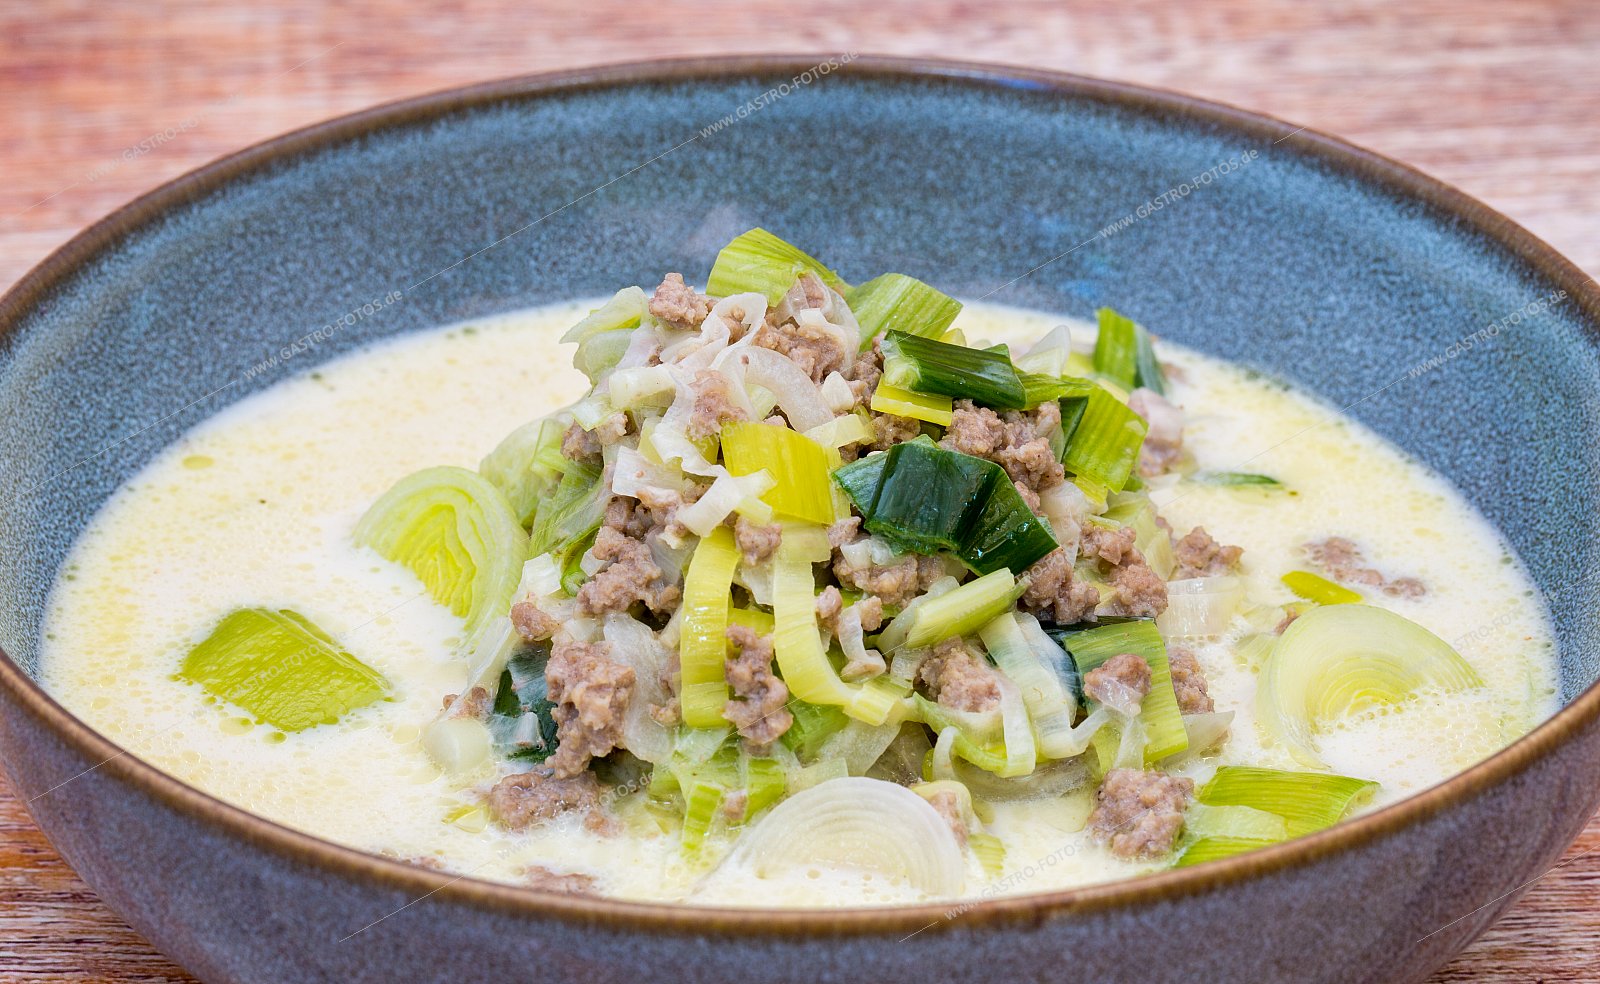 Hackfleisch-Lauch-Suppe - Suppen & Eintöpfe mit Fleischeinlage